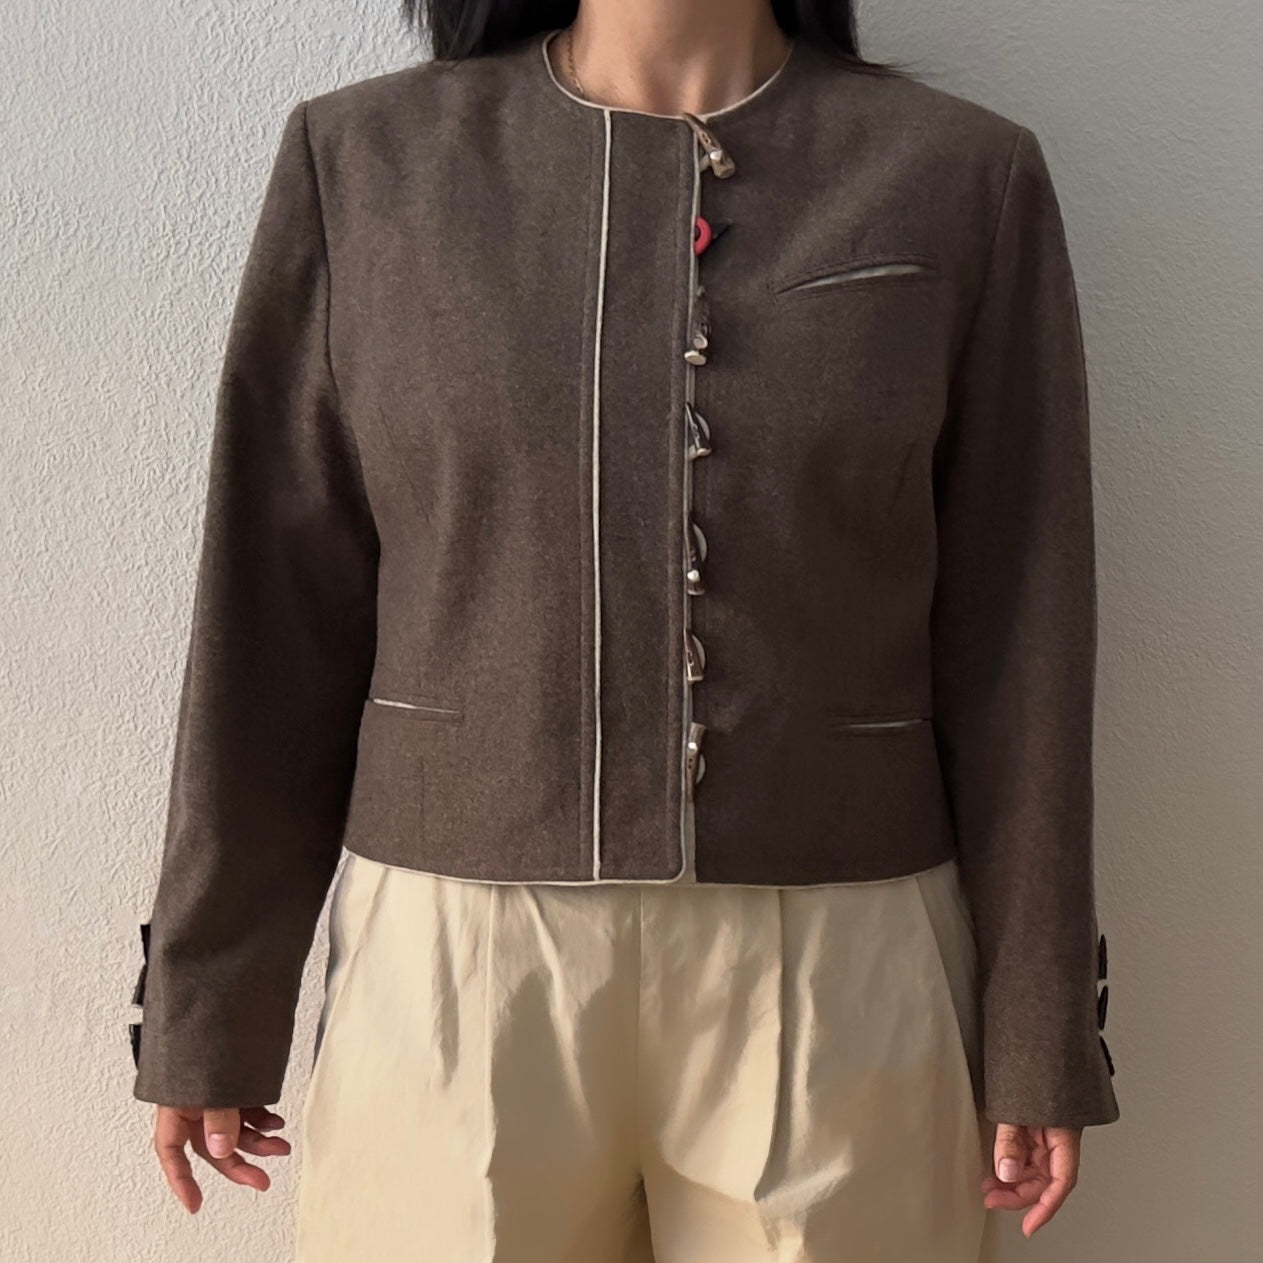 Vintage Beige Wool Jacket